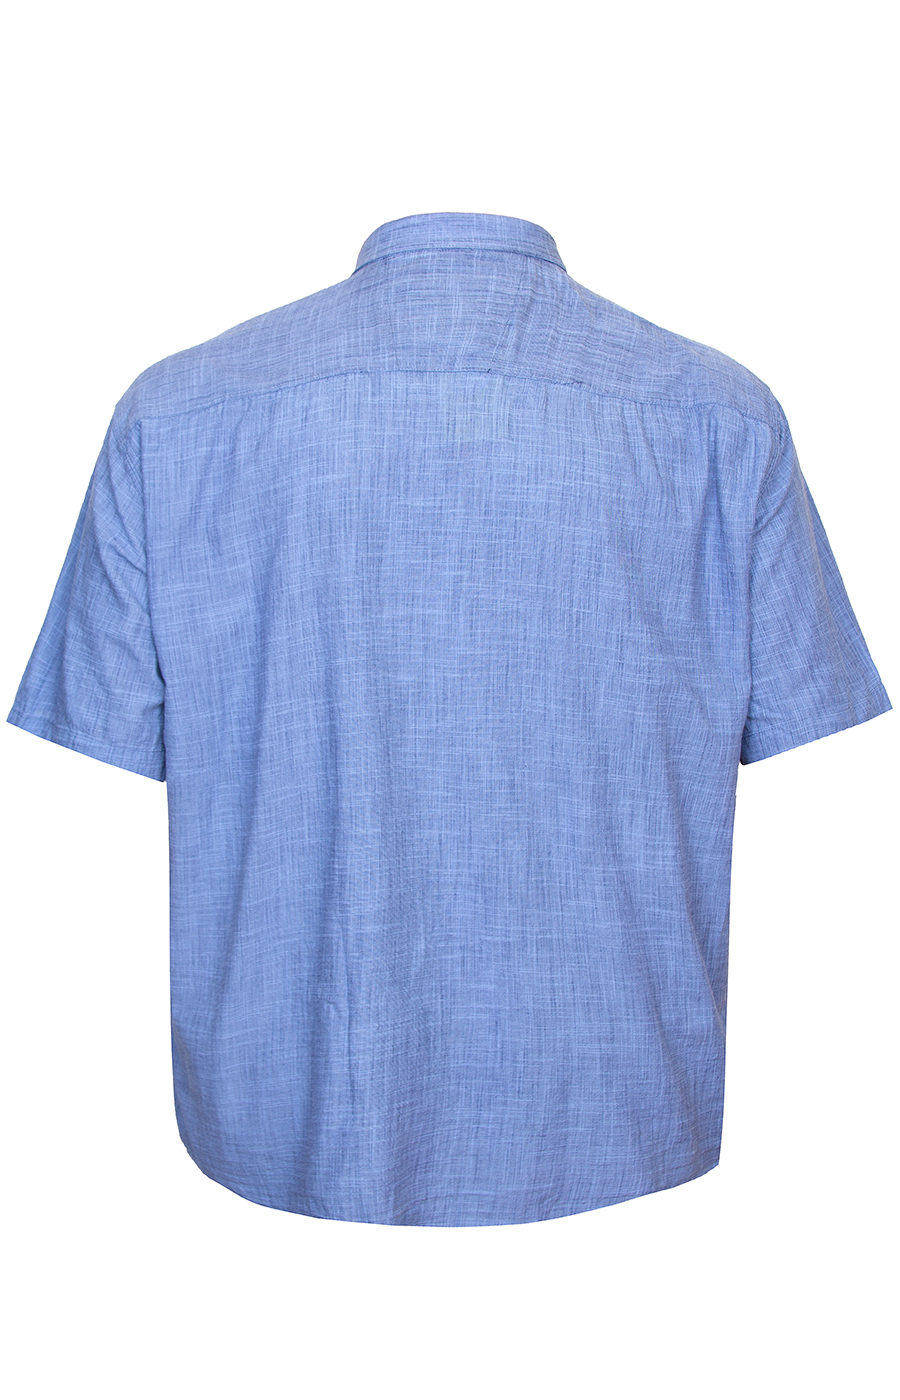 Синяя льняная рубашка большого размера